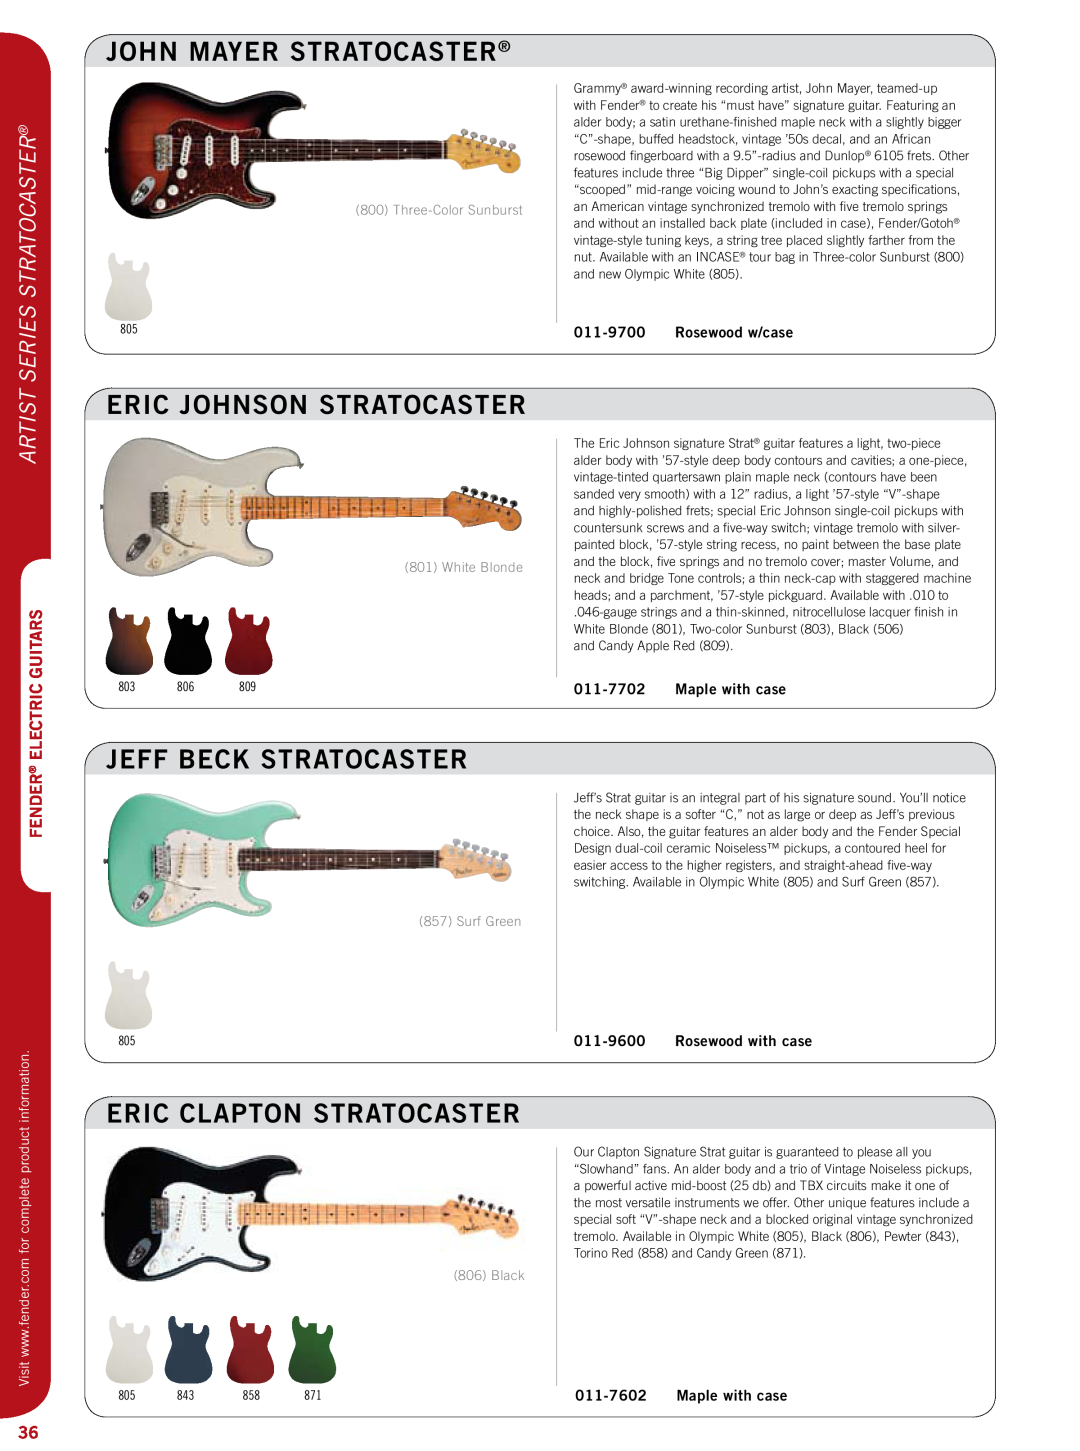 Fender 011-7602 specifications John Mayer Stratocaster, Eric Johnson Stratocaster, Jeff Beck Stratocaster, Artist, Fender 